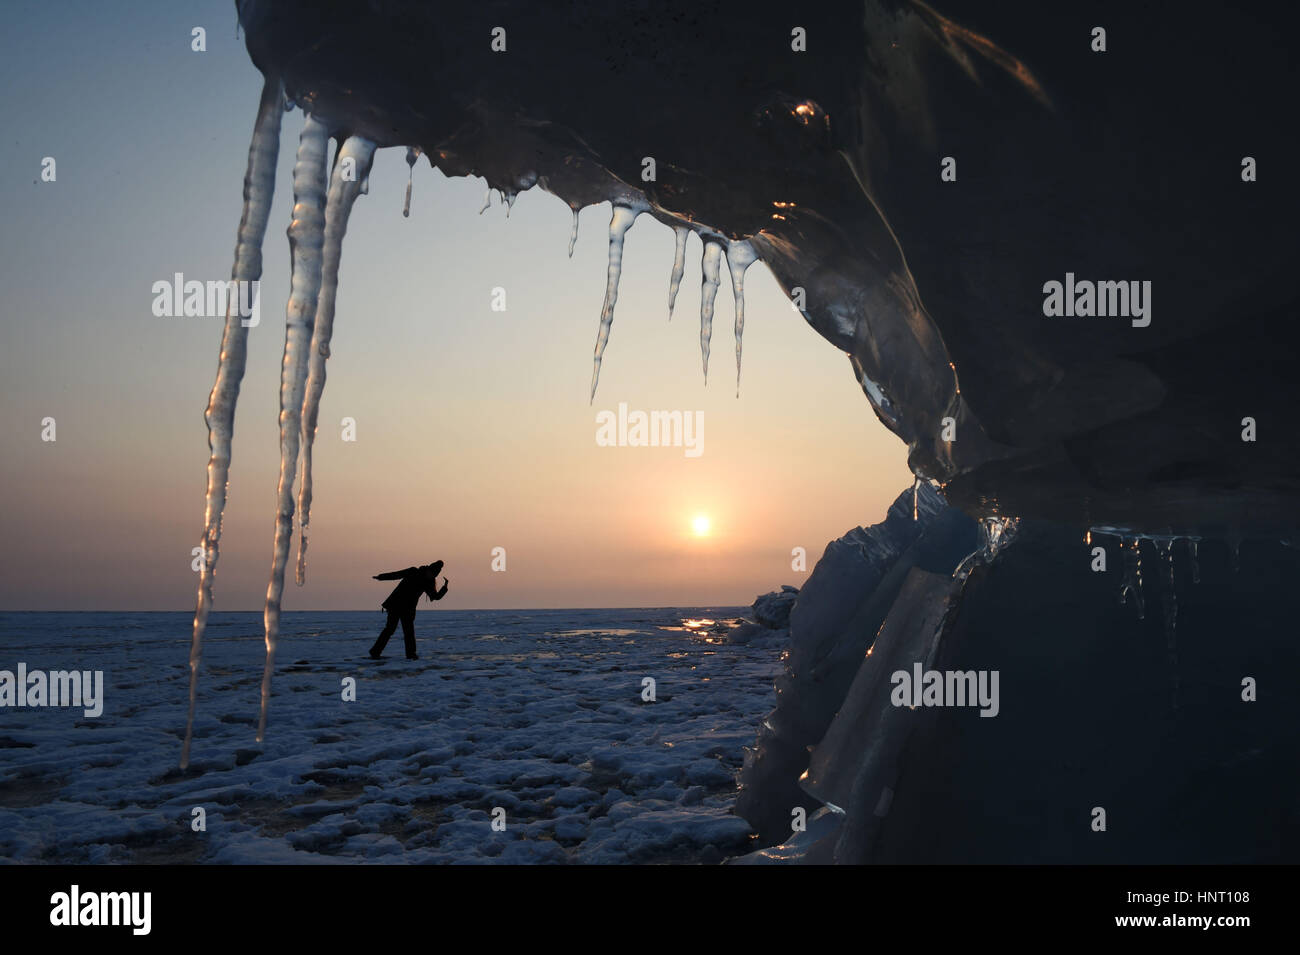 Mishan, Jixi Ville de la province du nord-est de la Chine. Feb 15, 2017. Un visiteur regarde banc de glace sur le lac Xingkai, lac frontière entre la Chine et la Russie, dans la région de Jixi Ville de la province du nord-est de la Chine, le 15 février 2017. Credit : Wang Jianwei/Xinhua/Alamy Live News Banque D'Images